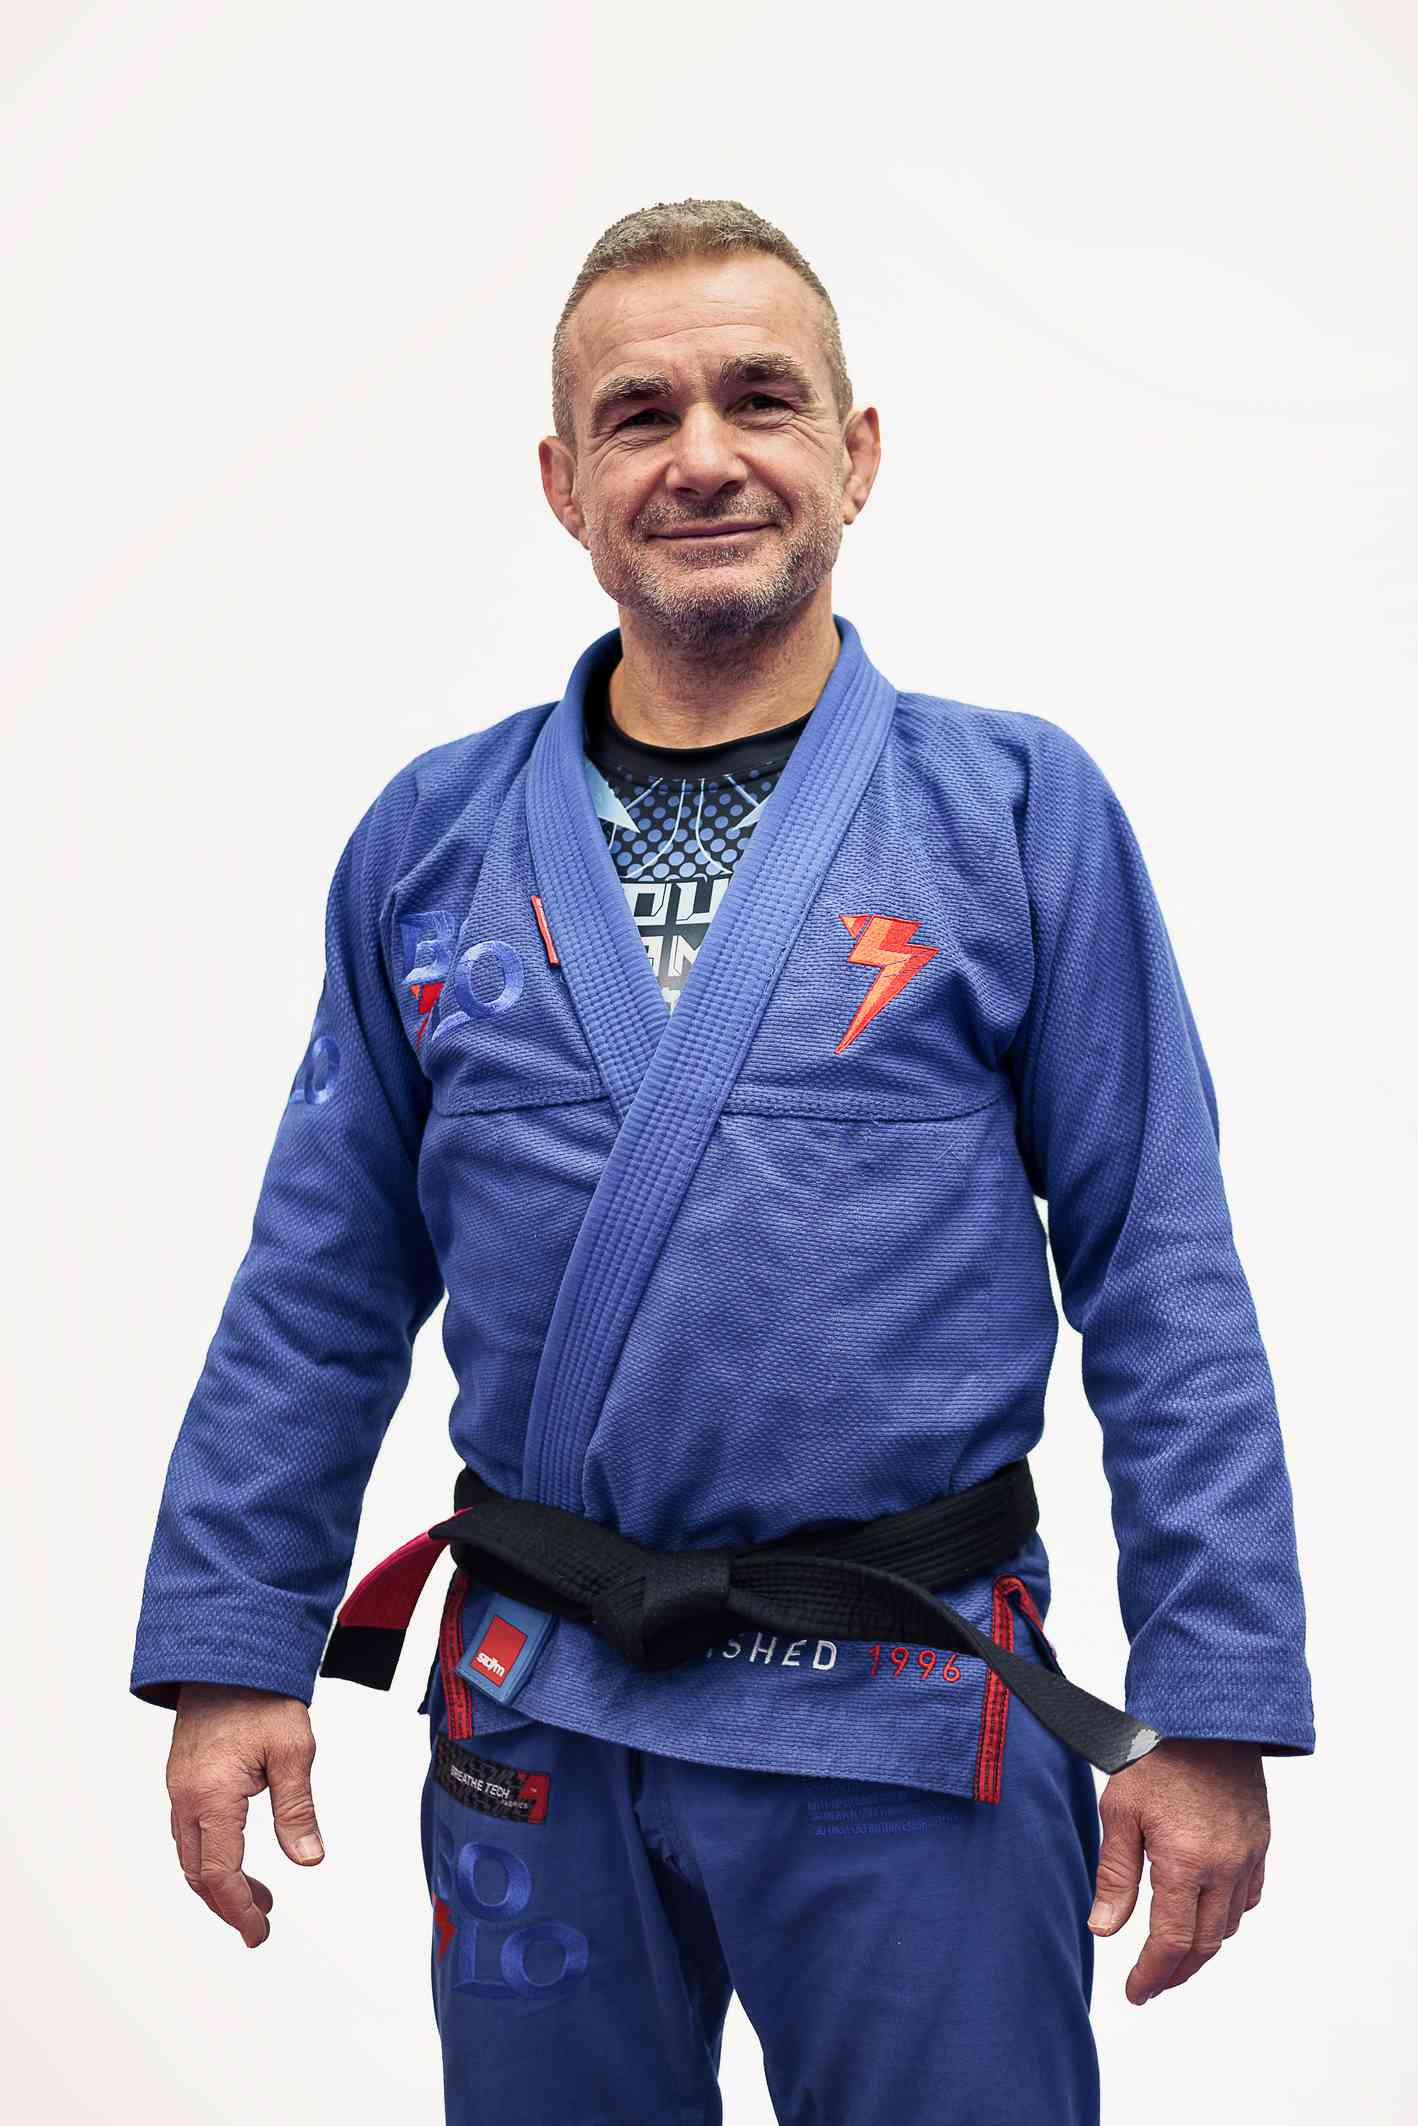 Krav Maga instructor from Warsaw